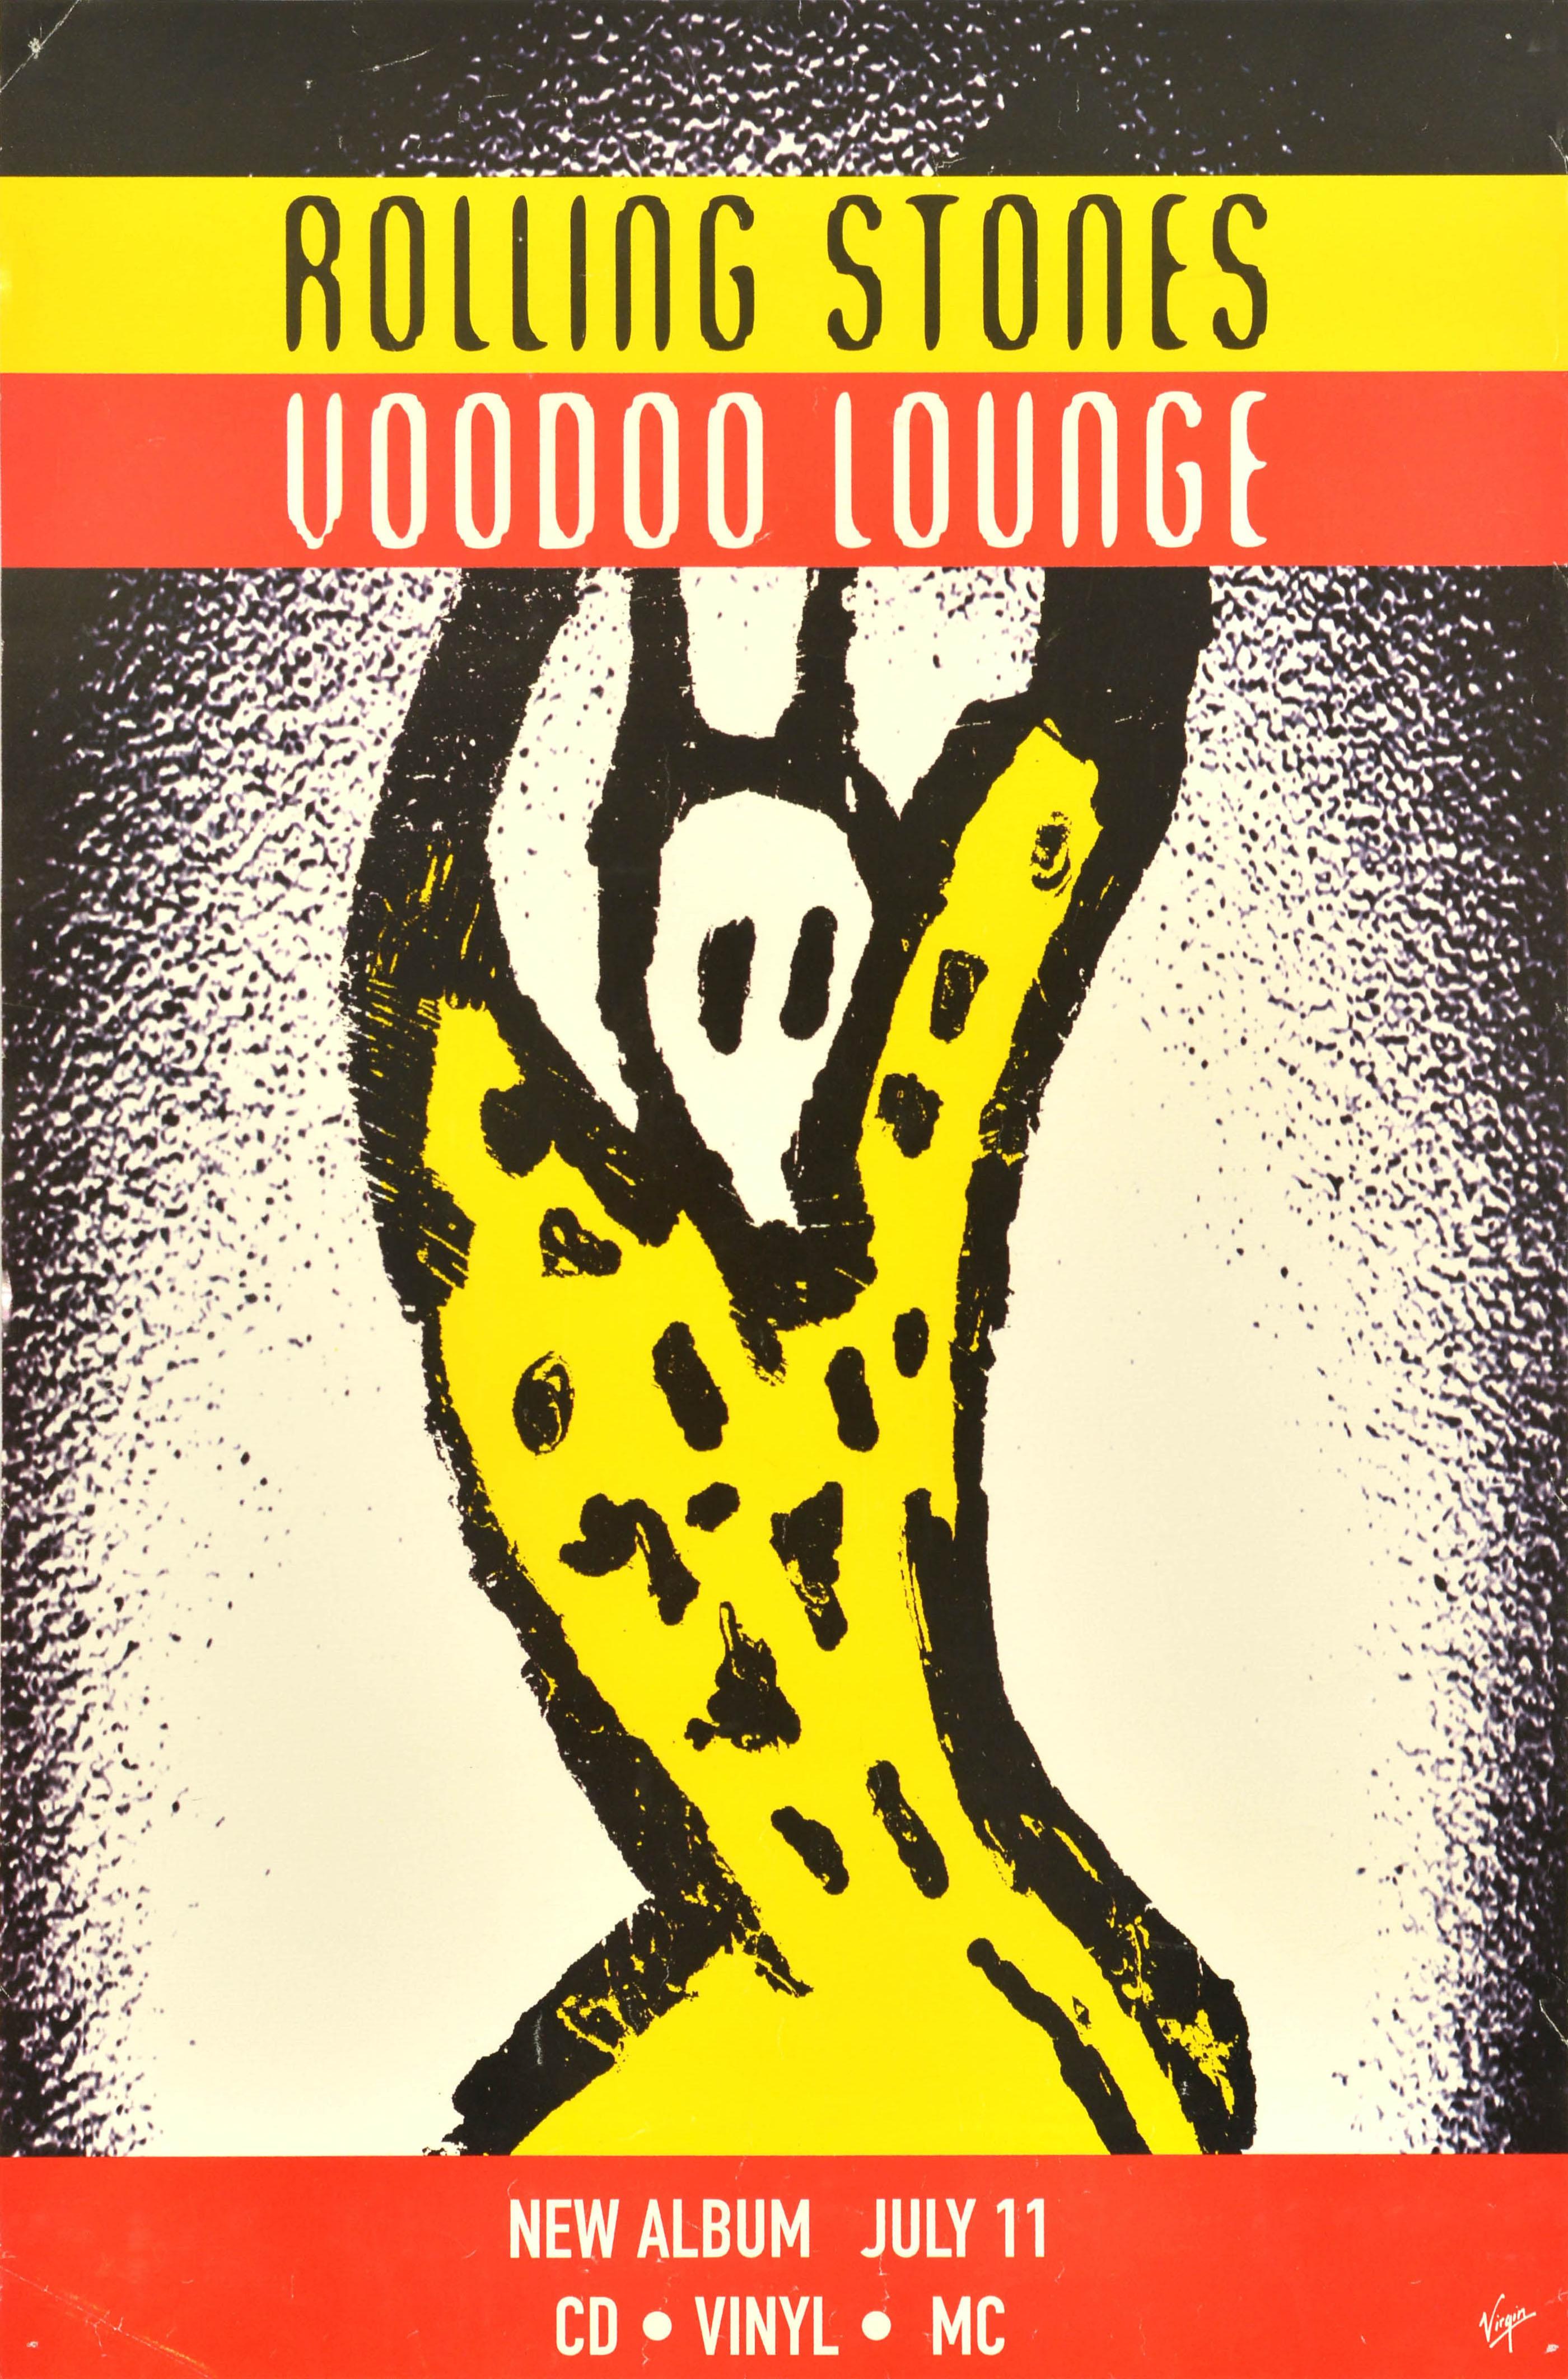 Affiche publicitaire vintage originale des Rolling Stones Voodoo Lounge Album